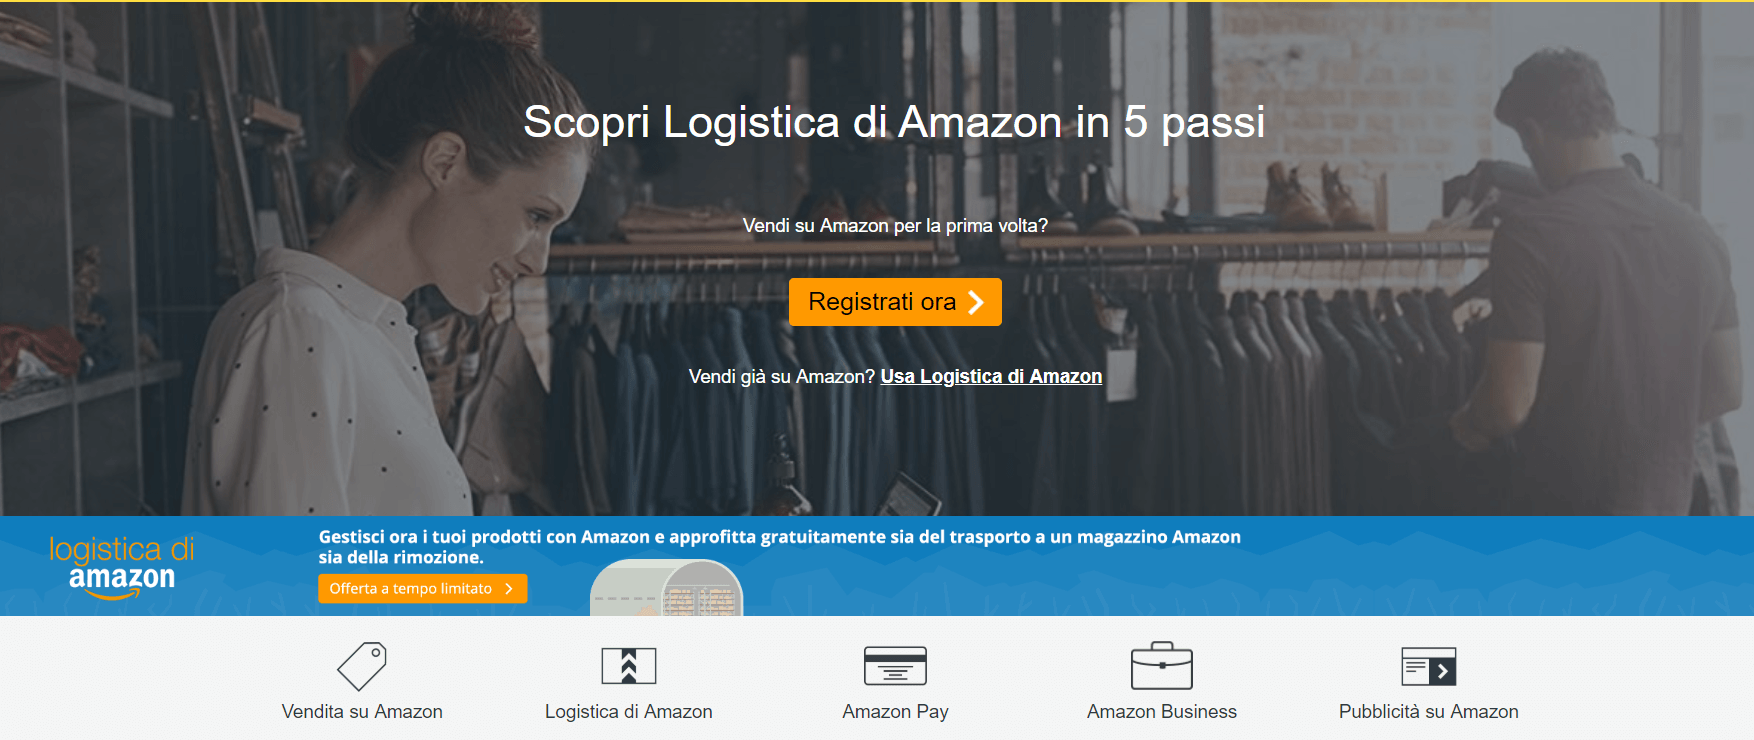 amazon e-commerce 2019 - logistica